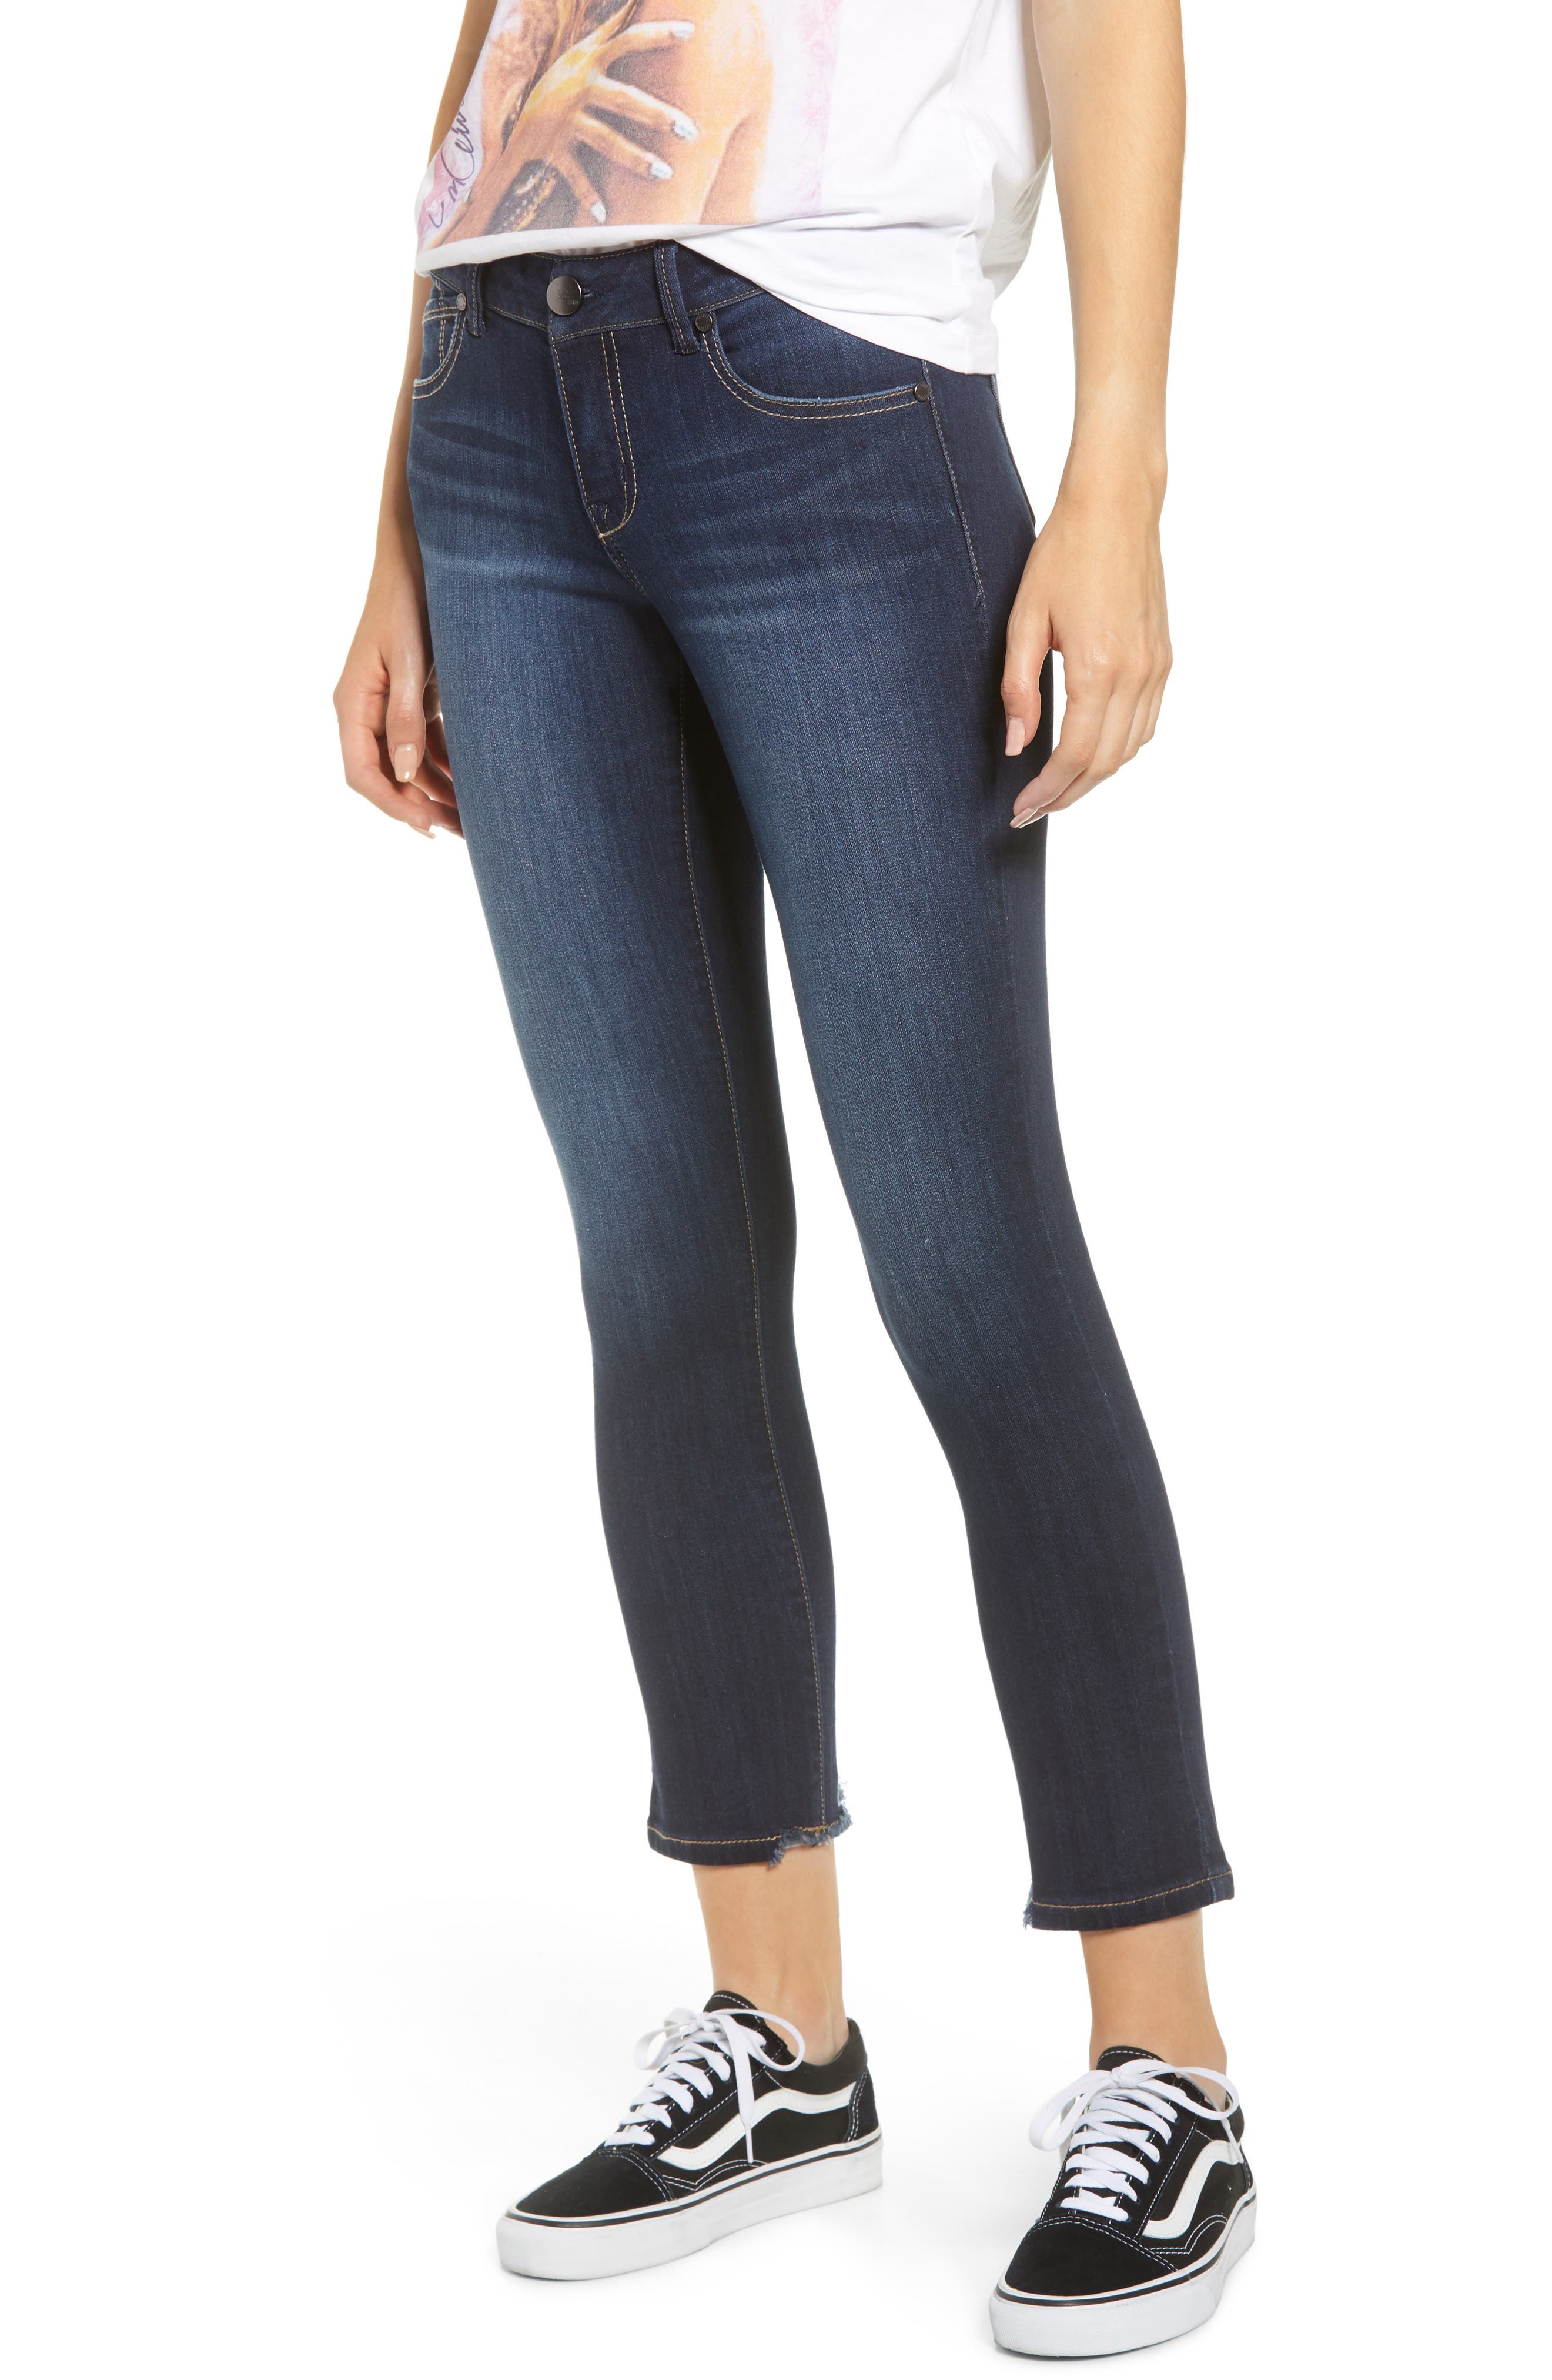 1822 crop skinny jeans